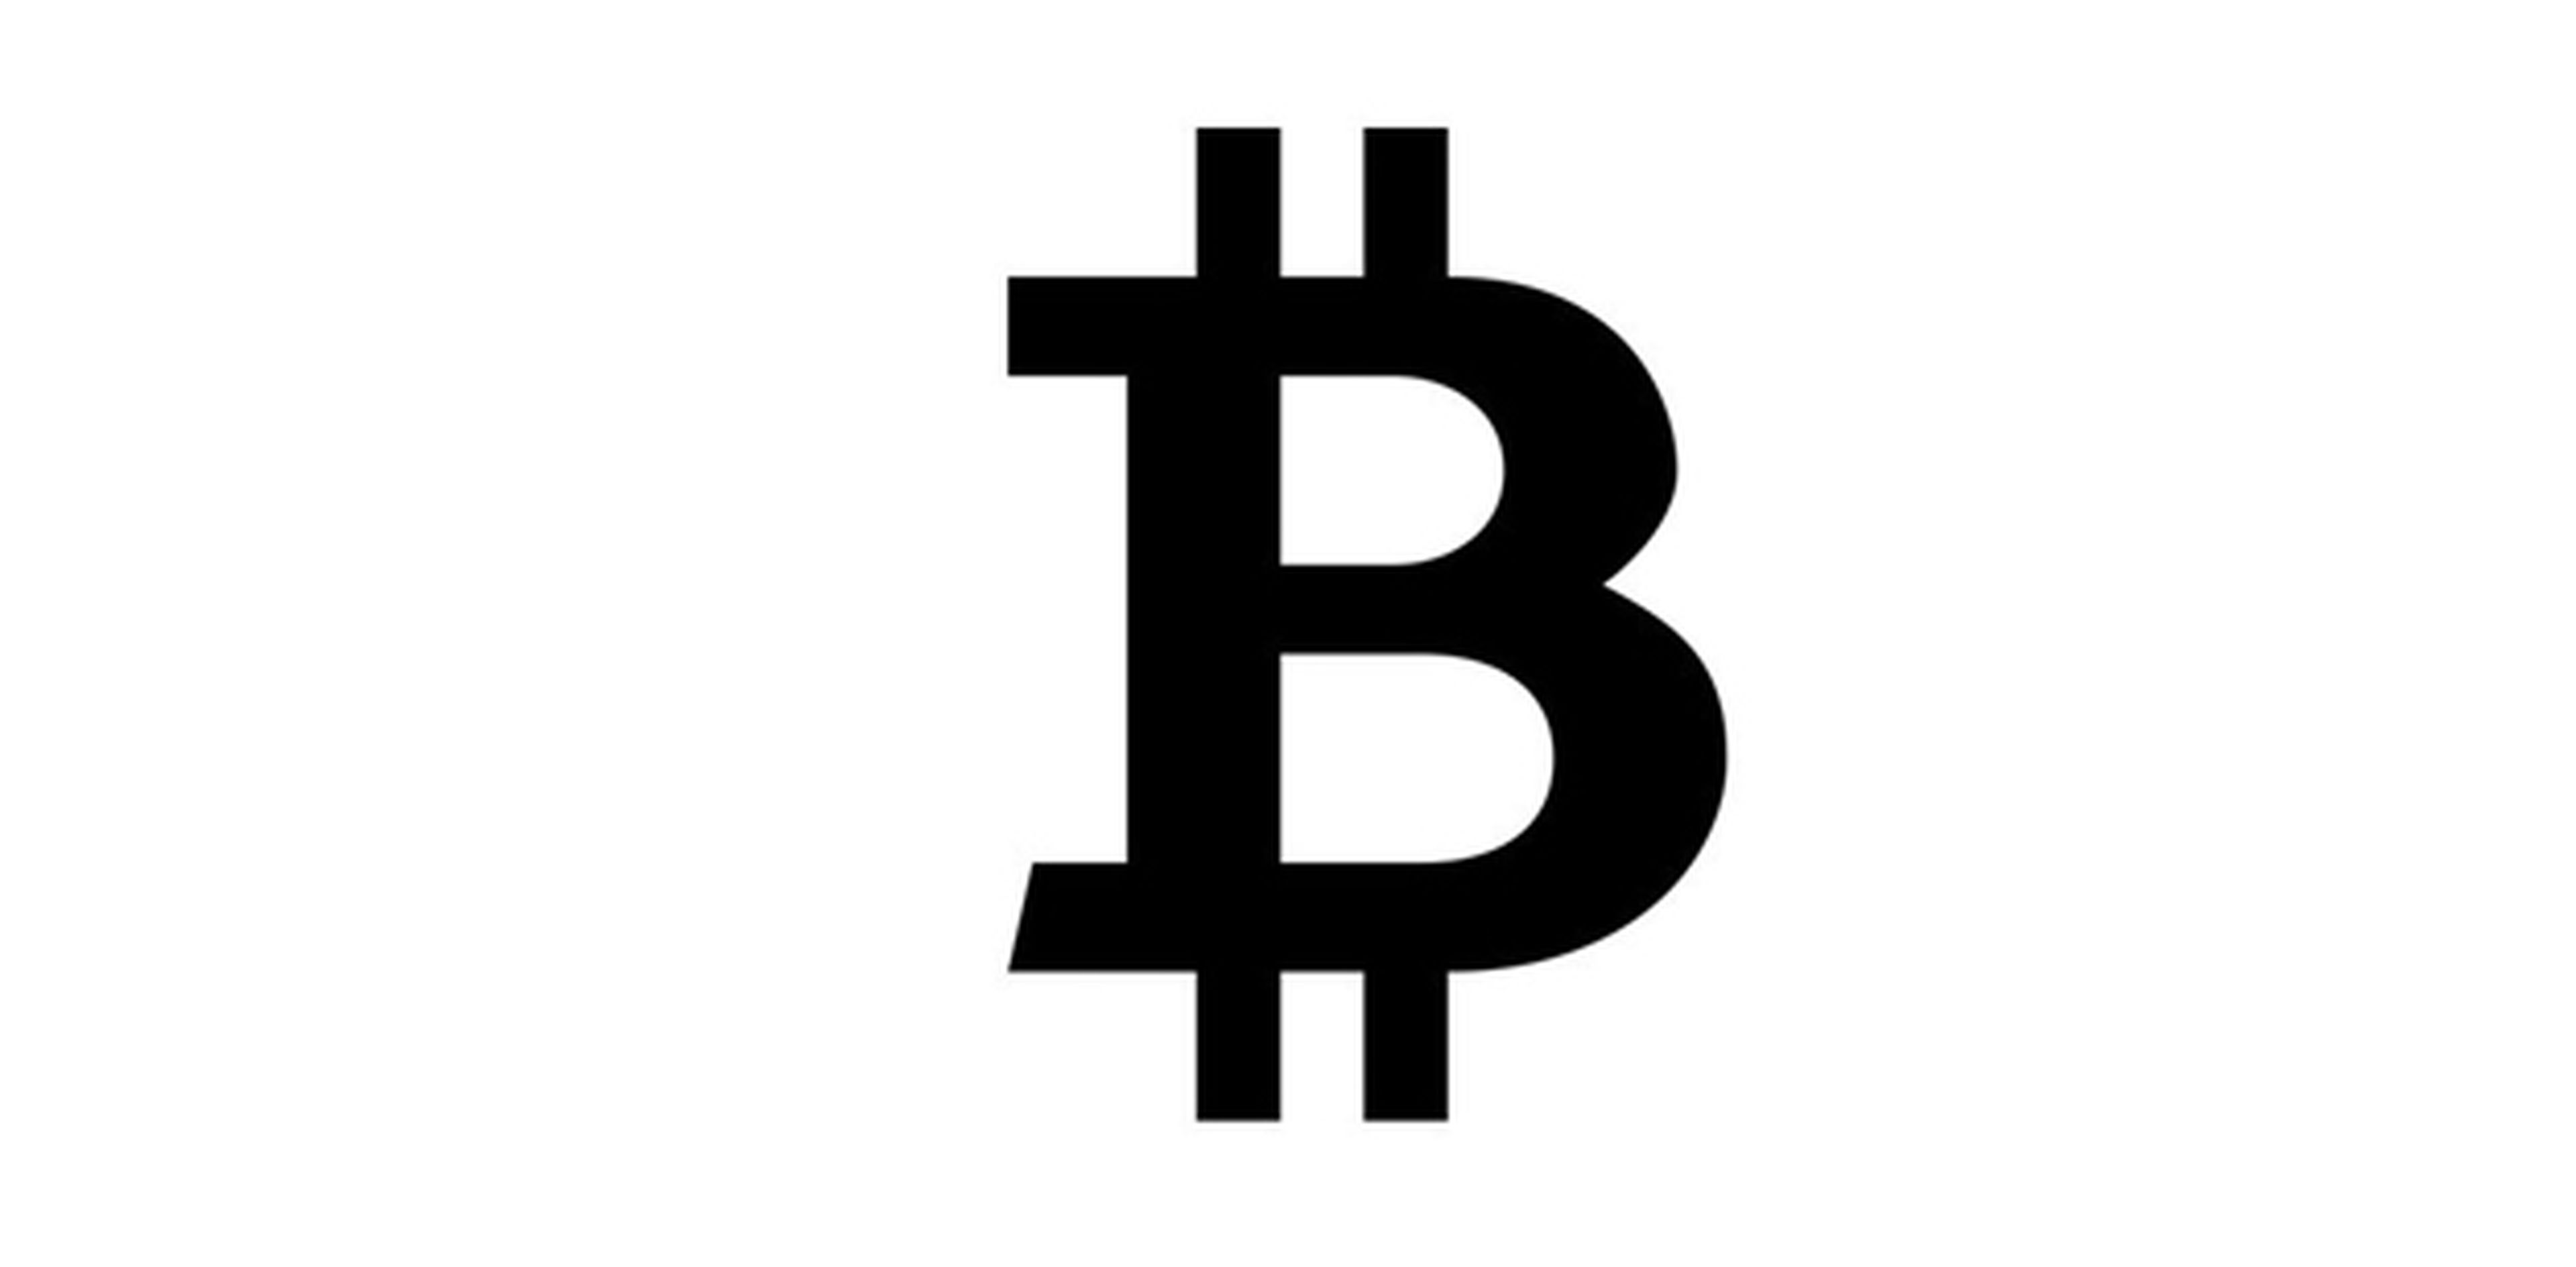 El emoji del Bitcoin